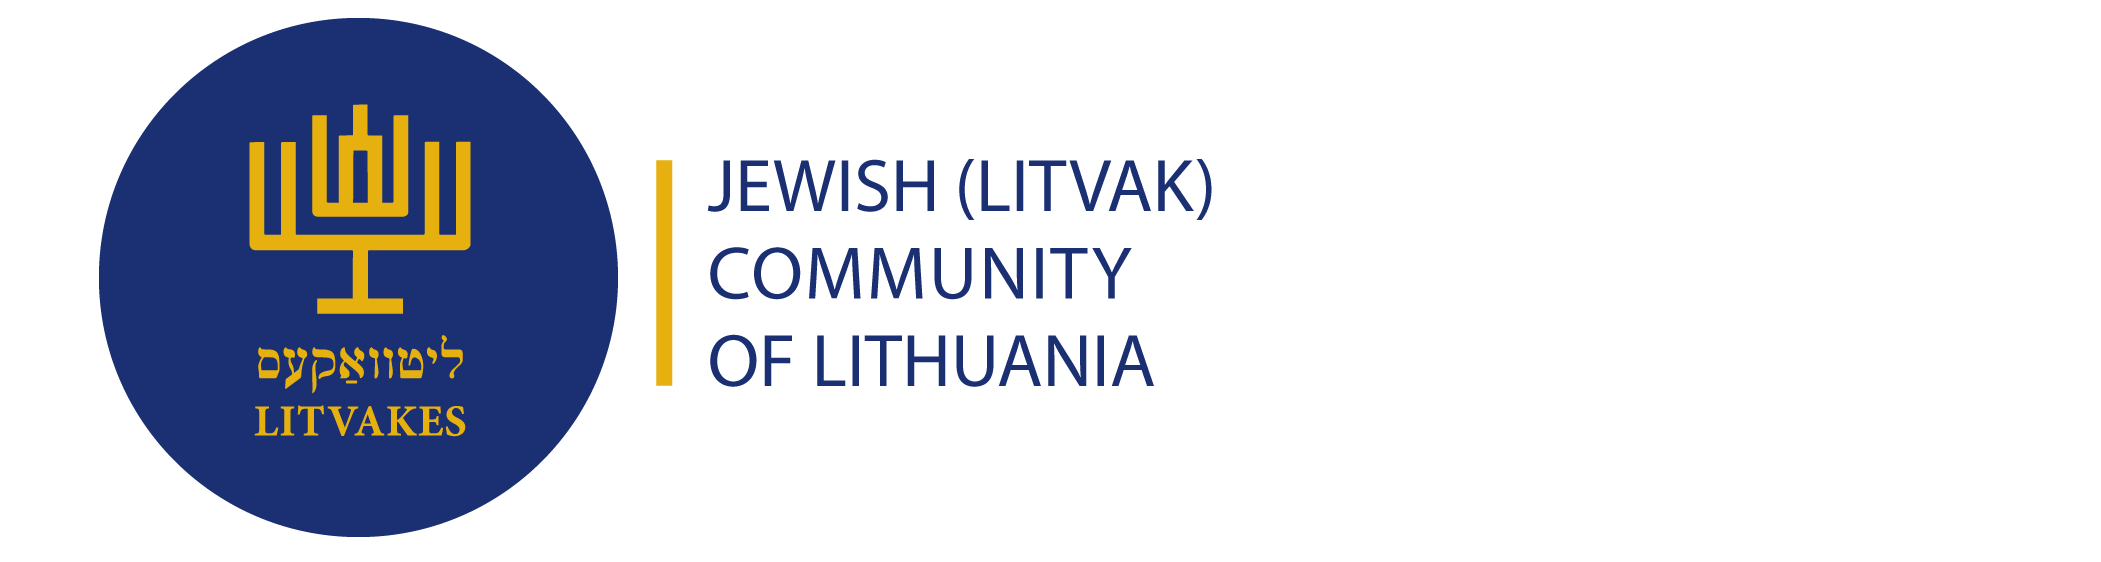 Еврейская община (литваков) Литвы